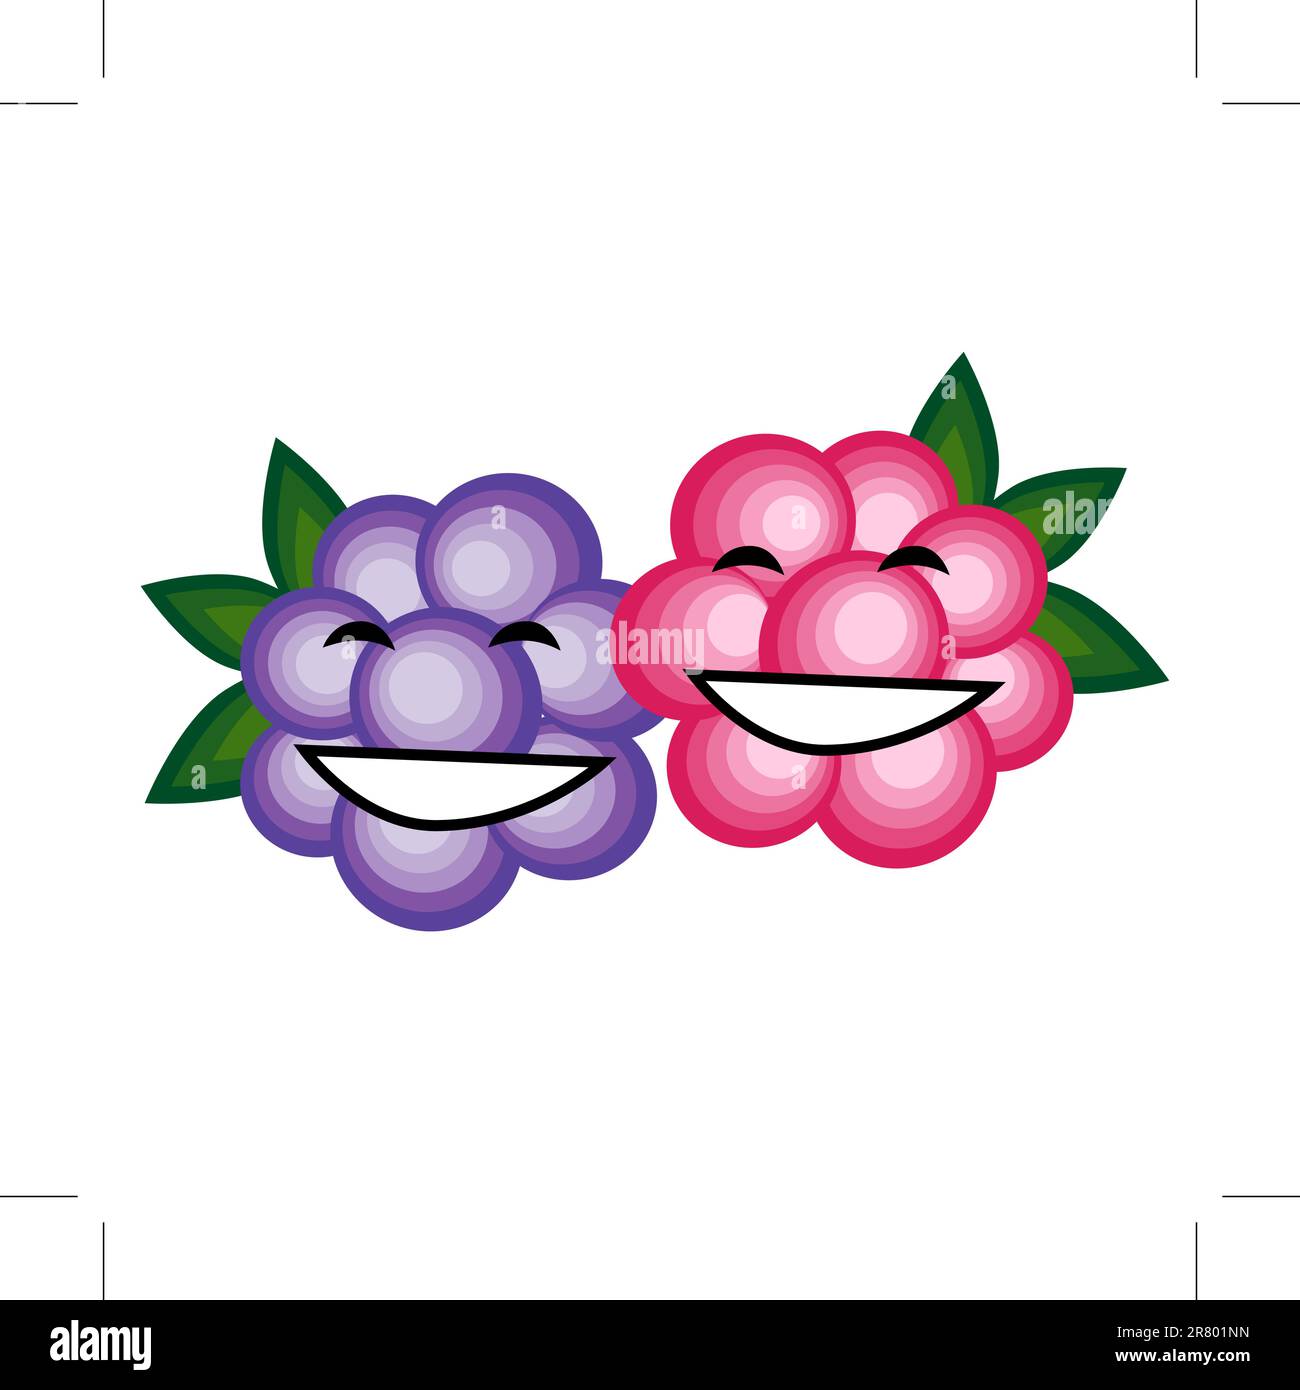 Des fruits drôles souriant ensemble pour votre conception Illustration de Vecteur